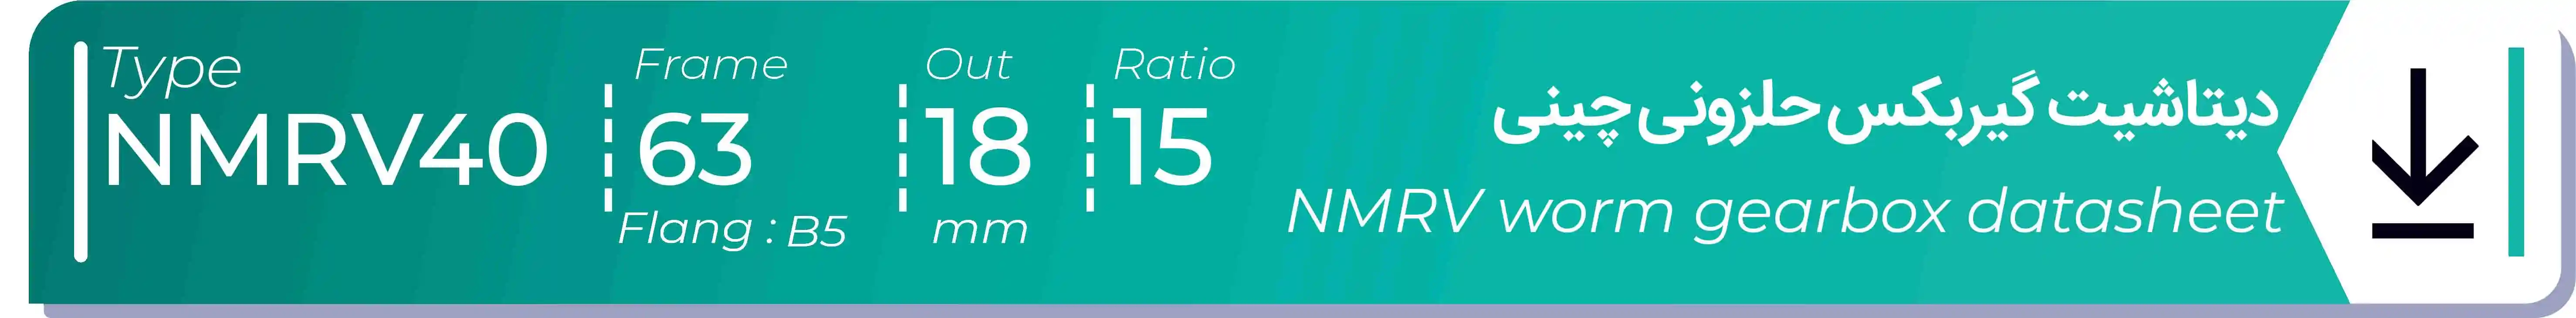  دیتاشیت و مشخصات فنی گیربکس حلزونی چینی   NMRV40  -  با خروجی 18- میلی متر و نسبت15 و فریم 63